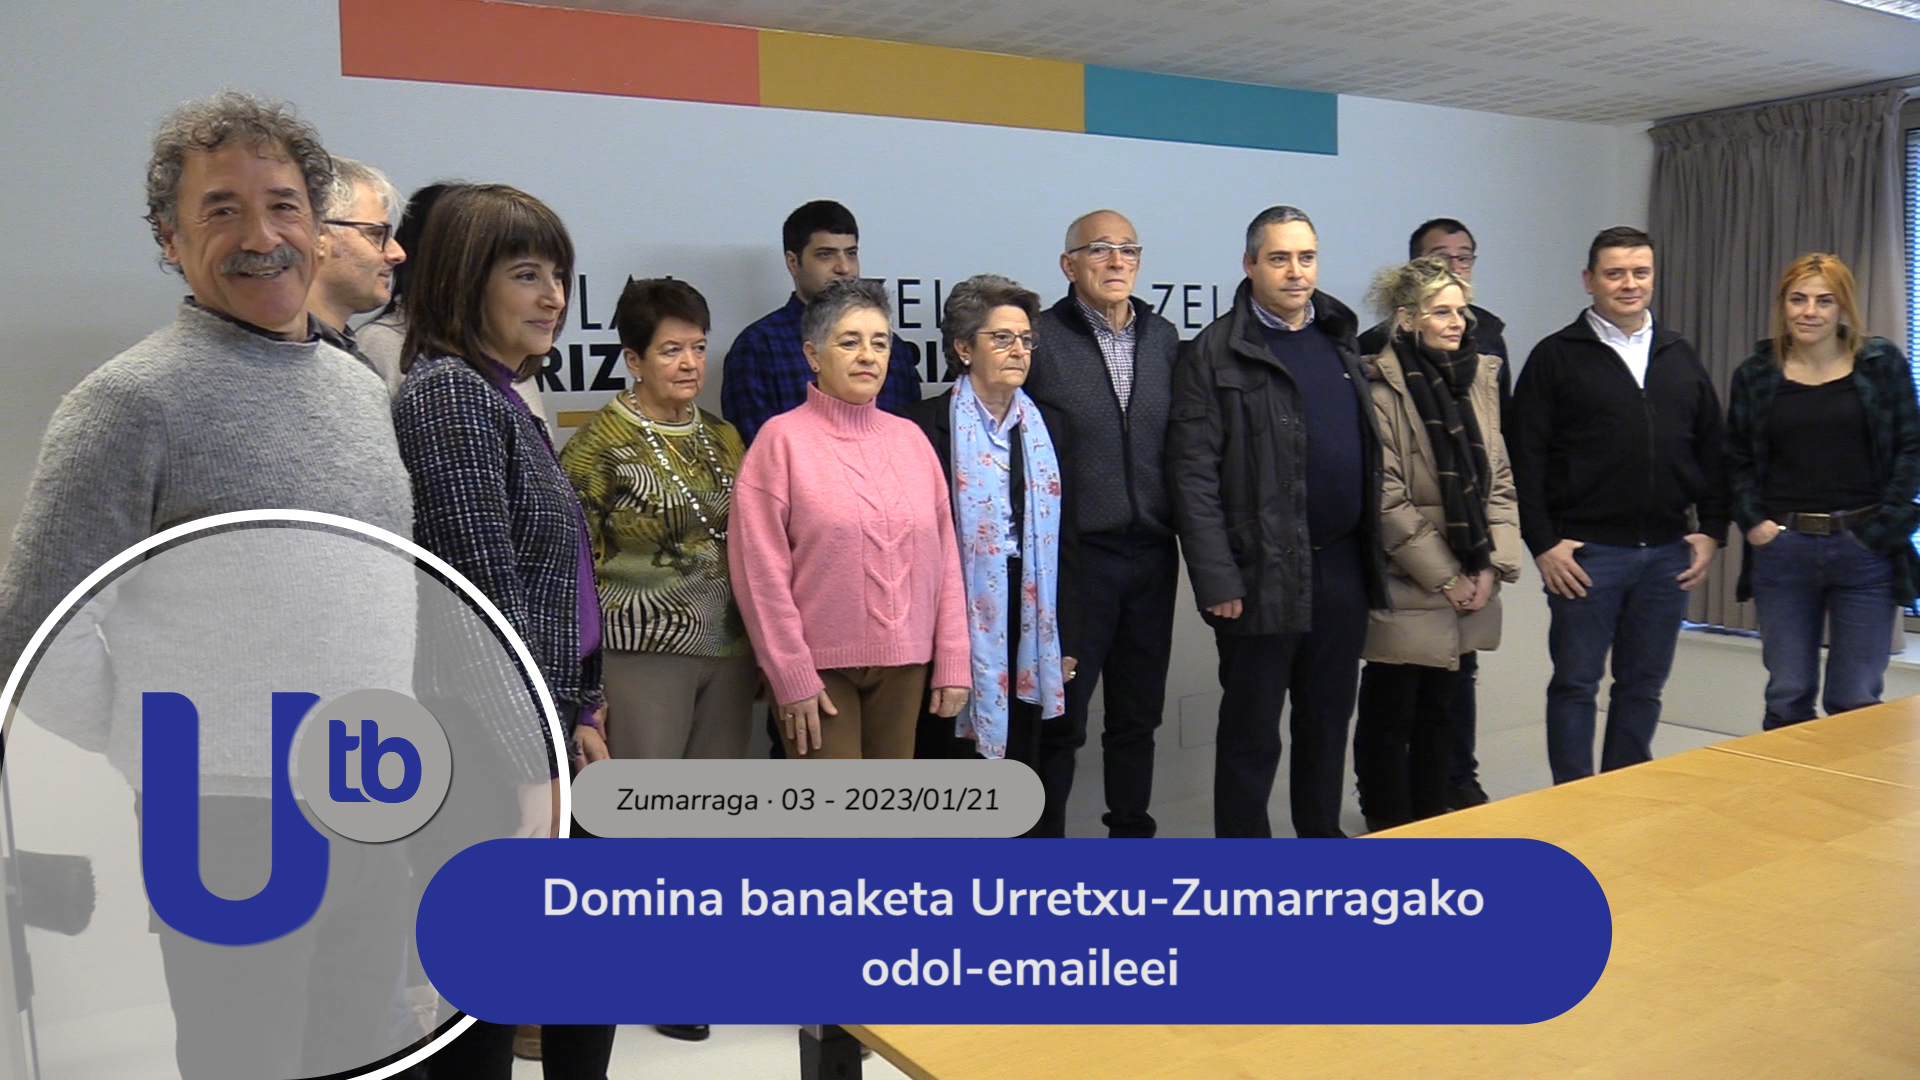 Entrega de medallas a donantes de sangre de Urretxu-Zumarraga / Domina banaketa Urretxu-Zumarragako odol-emaileei